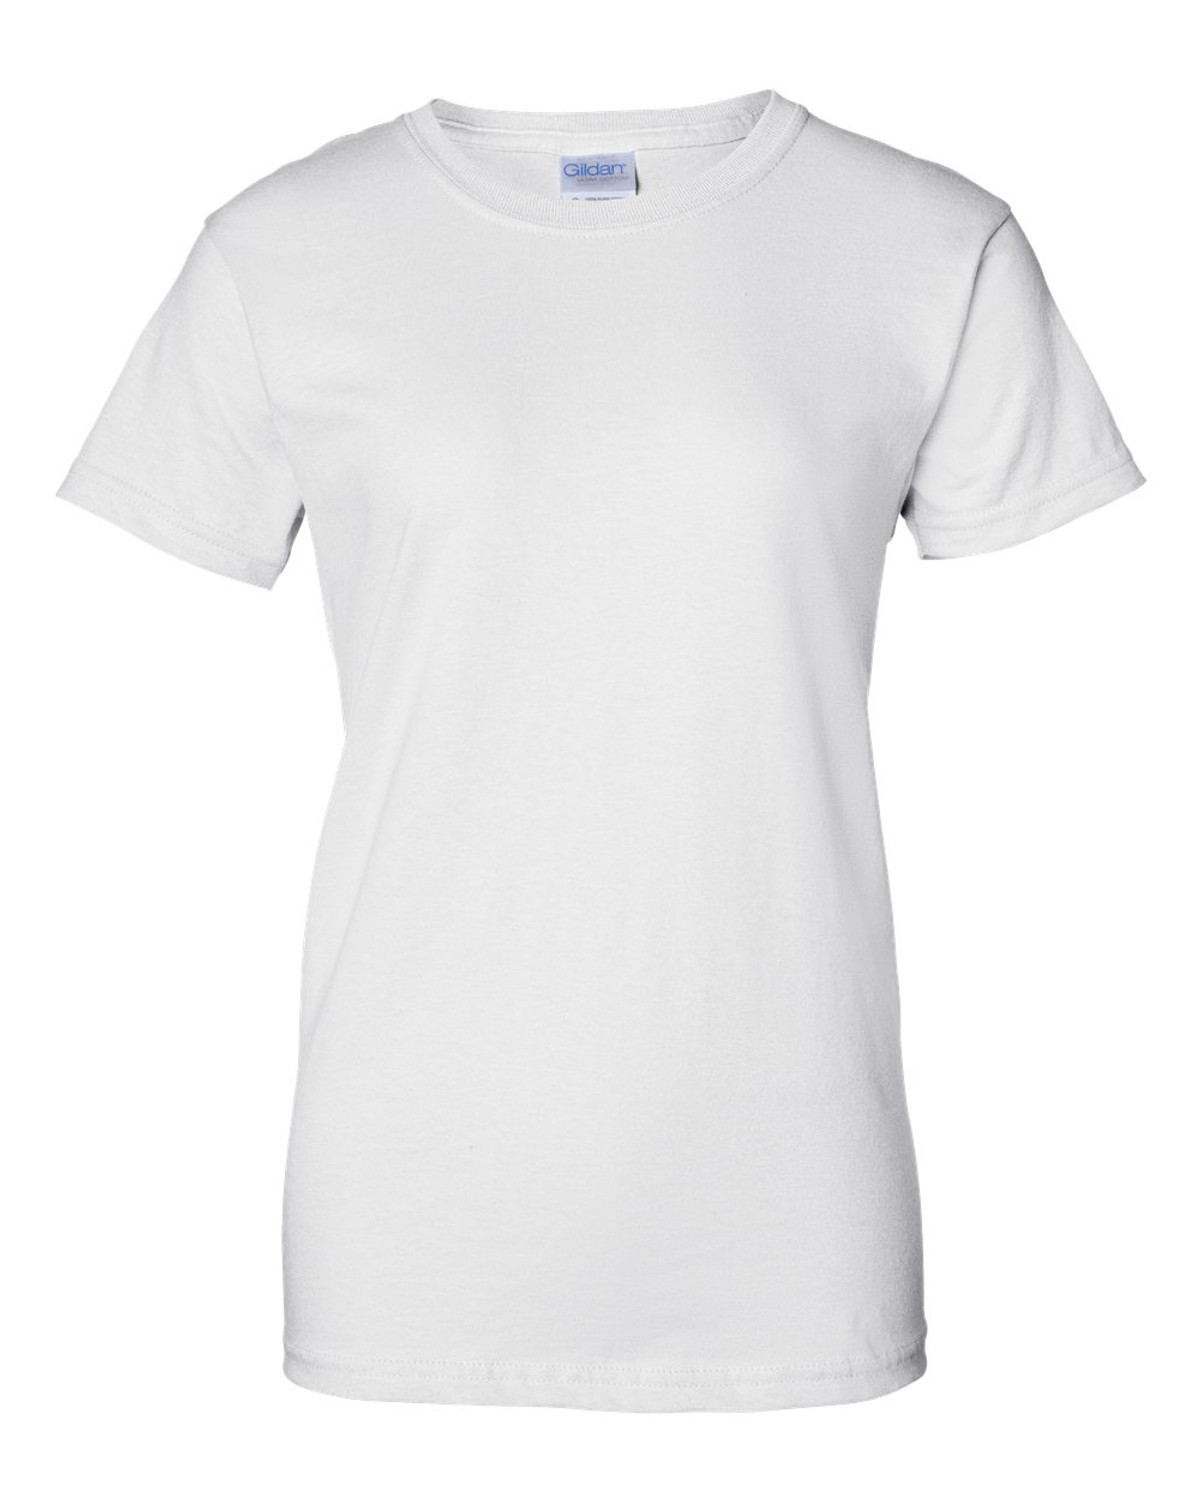 Womens 6.1 oz. Ultra Cotton T-Shirt 10 Pack 